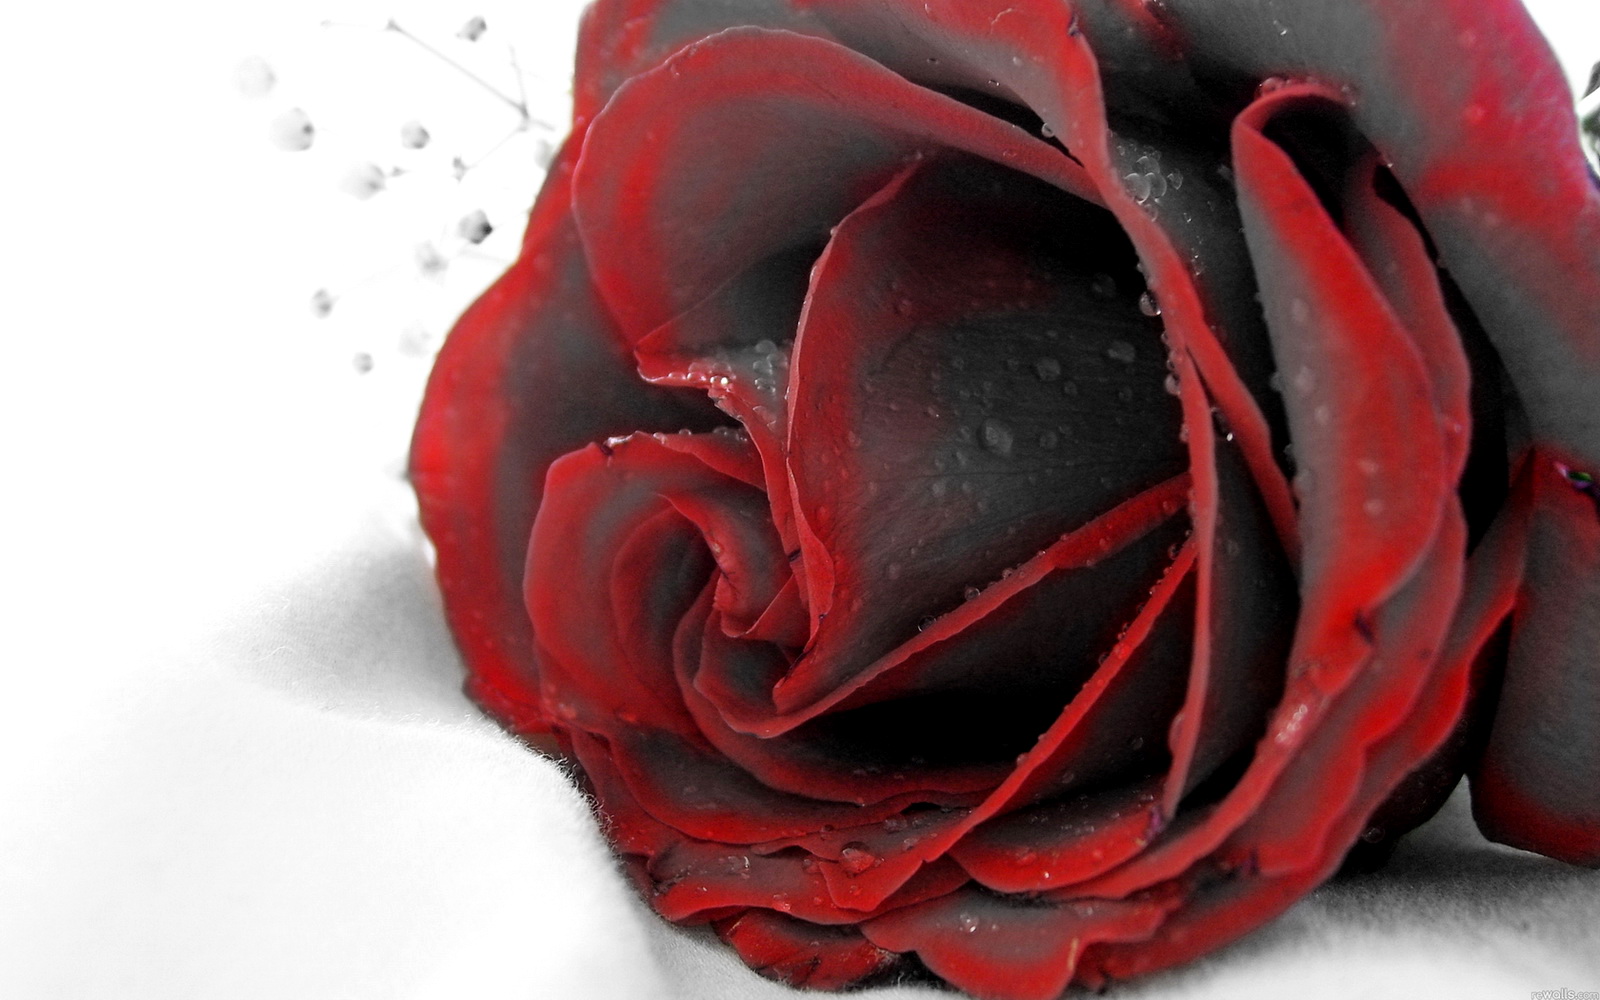 [83+] Red Rose Black Background | WallpaperSafari.com